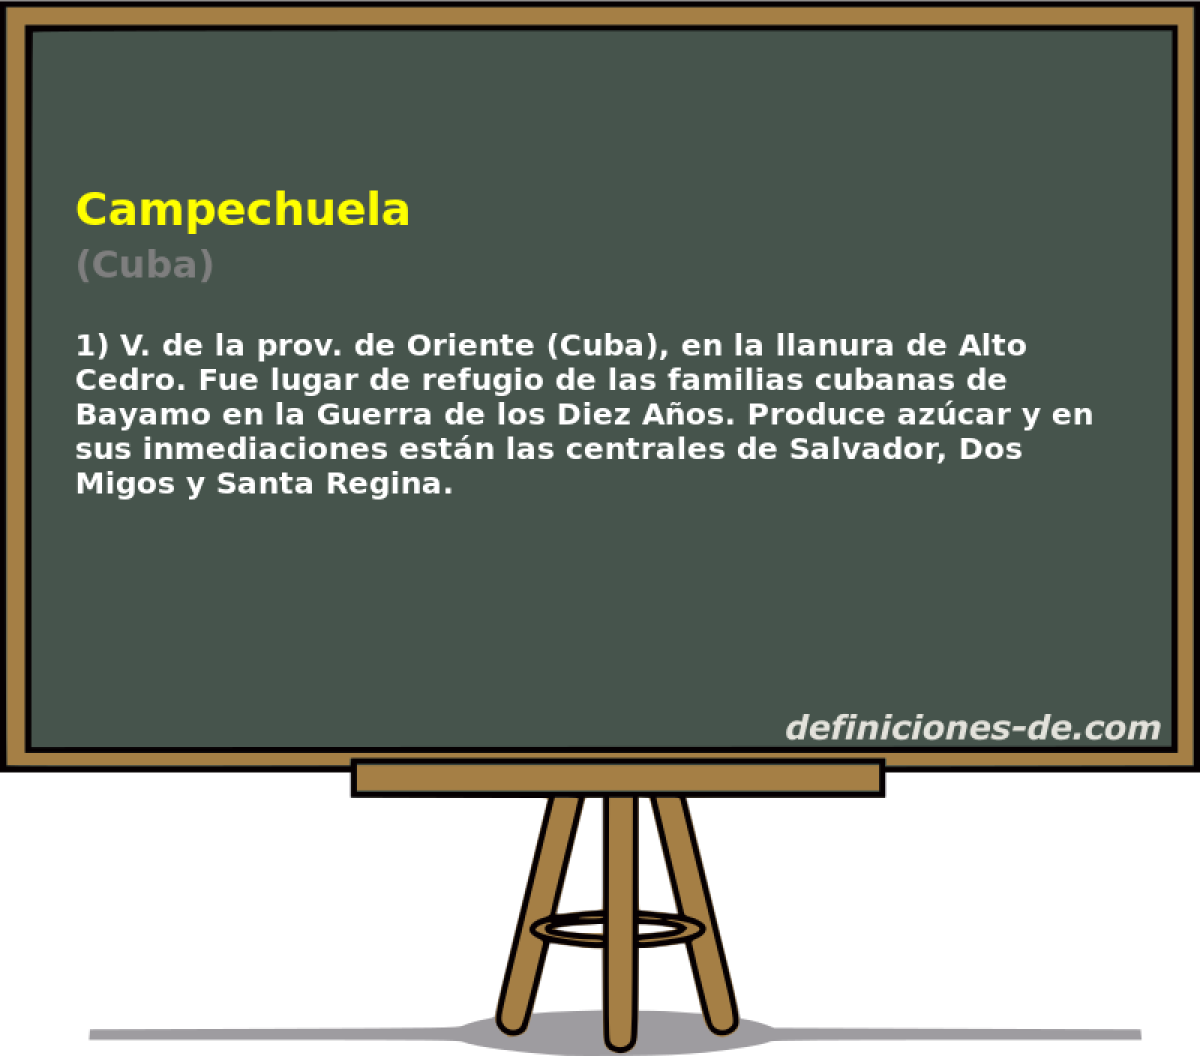 Campechuela (Cuba)